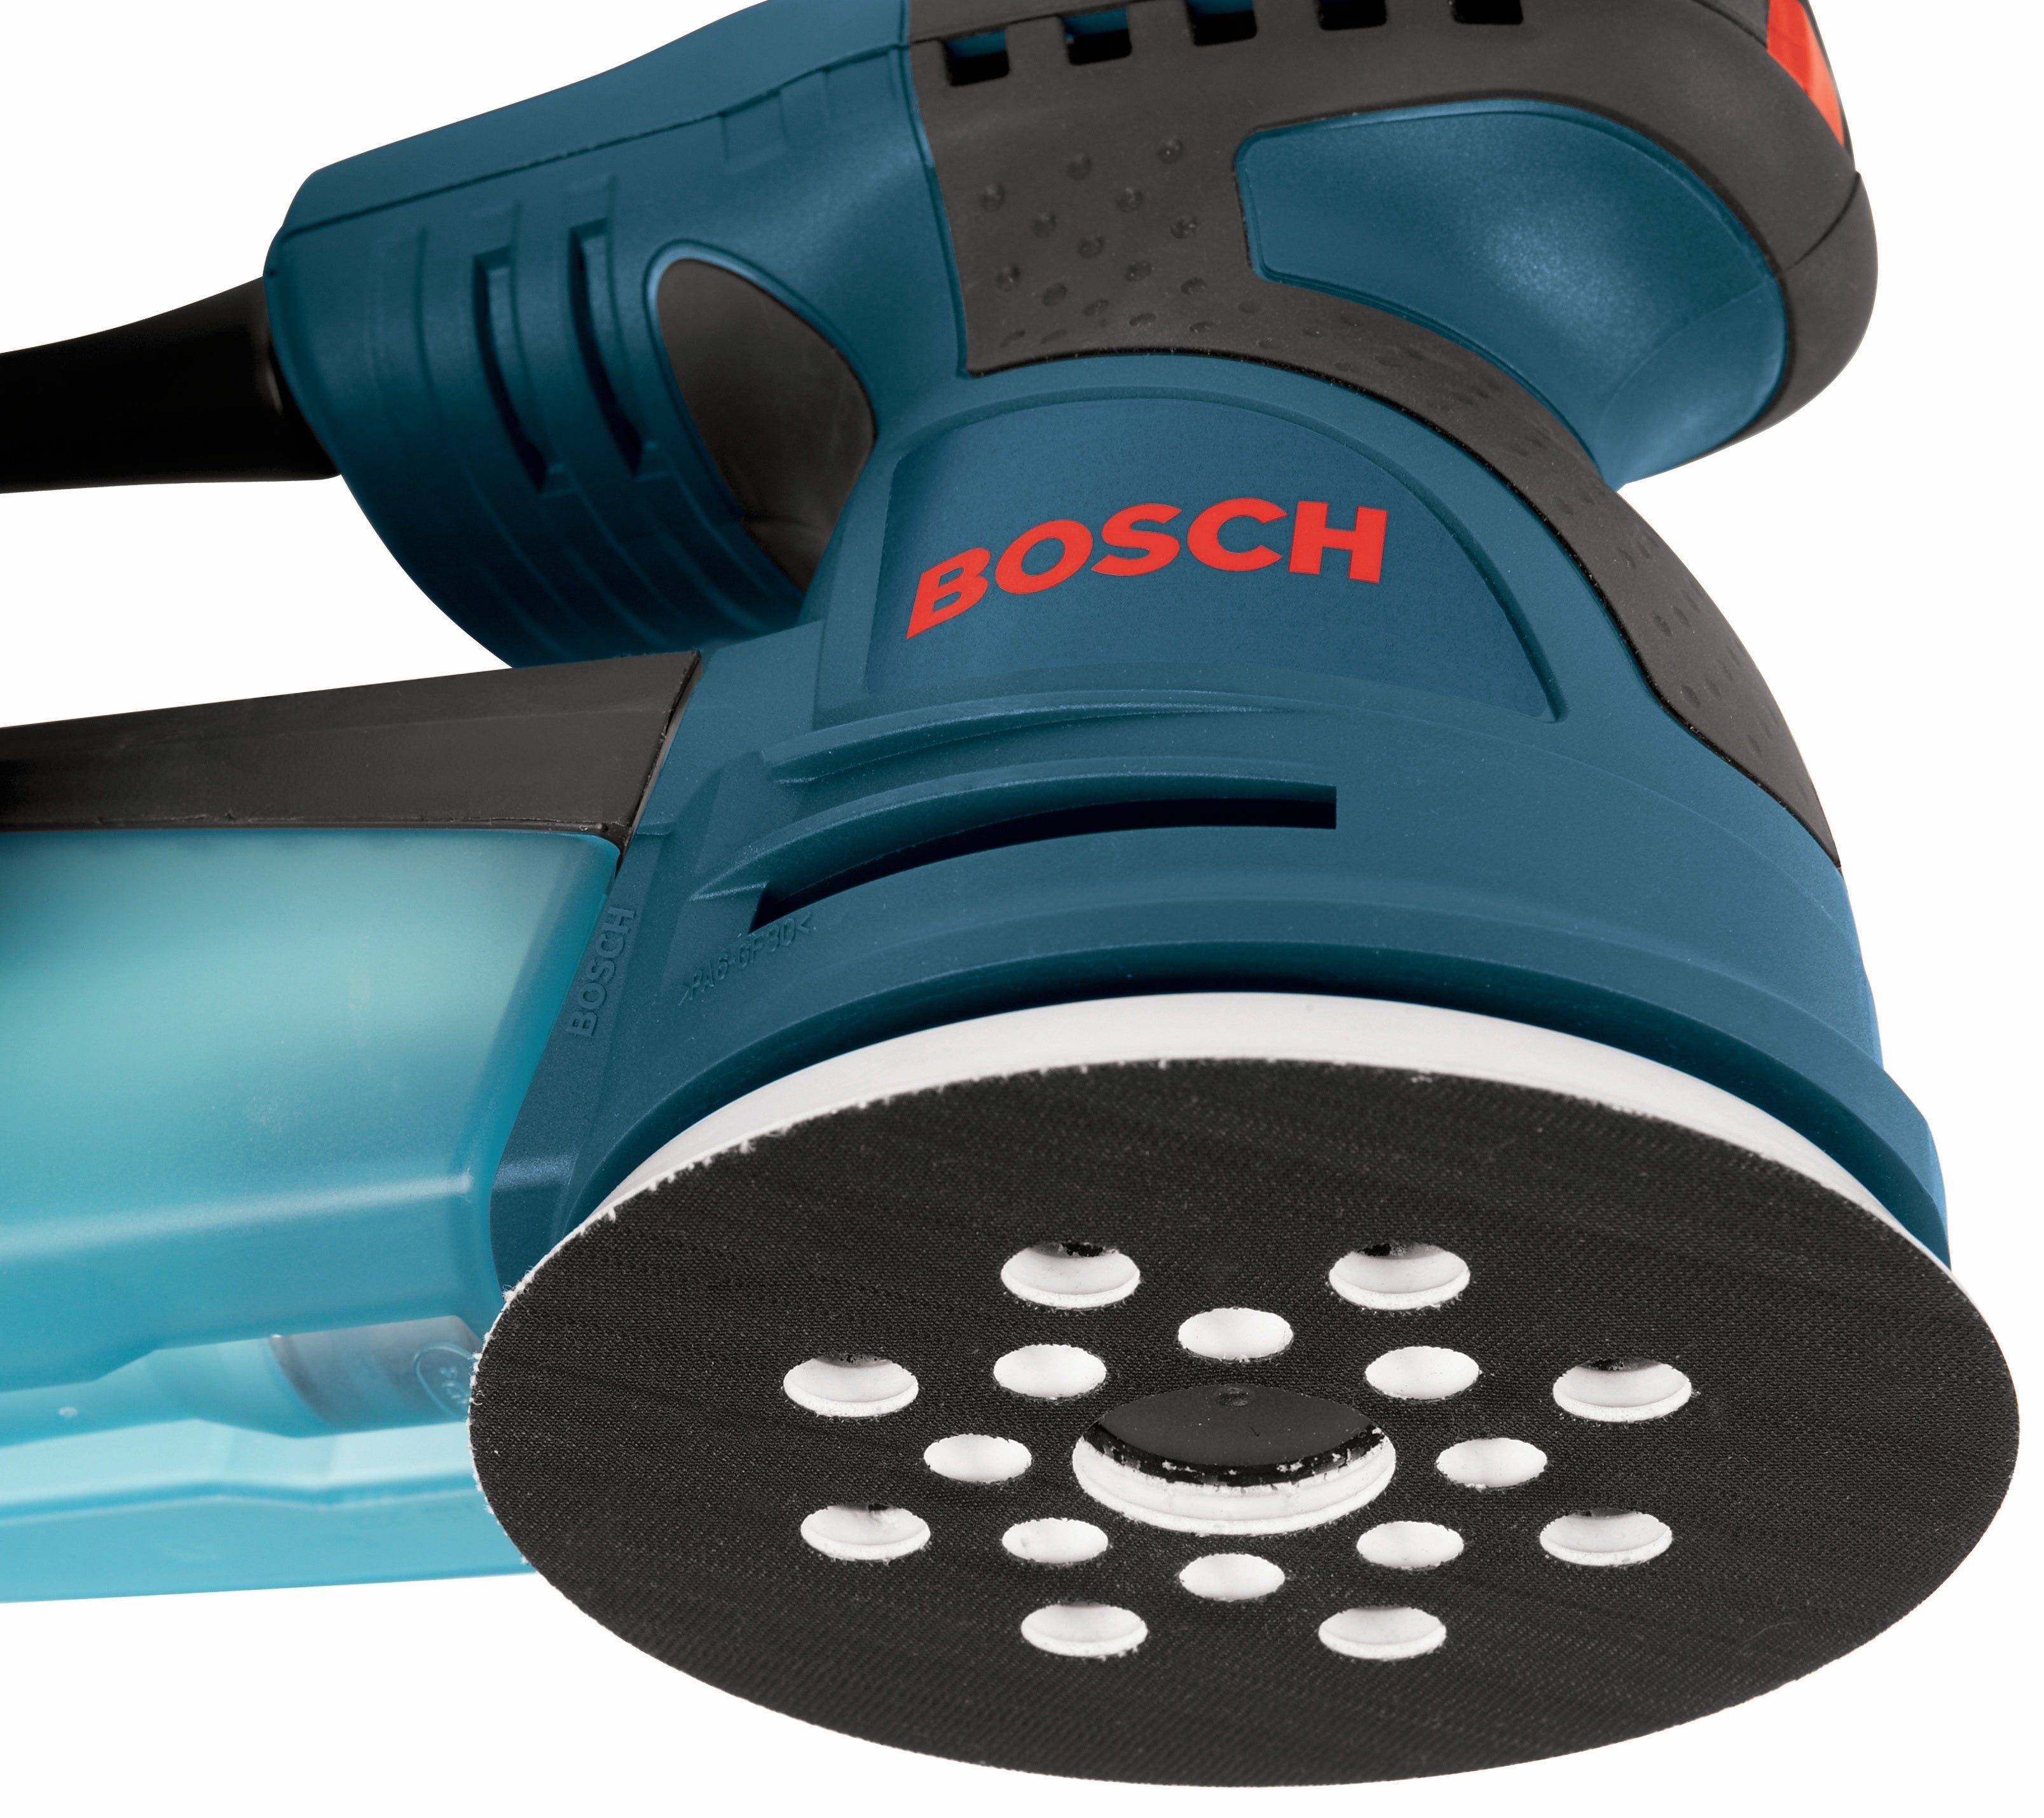 Bosch ROS20VSC - 5" Random Orbit Variable Speed Palm Sander